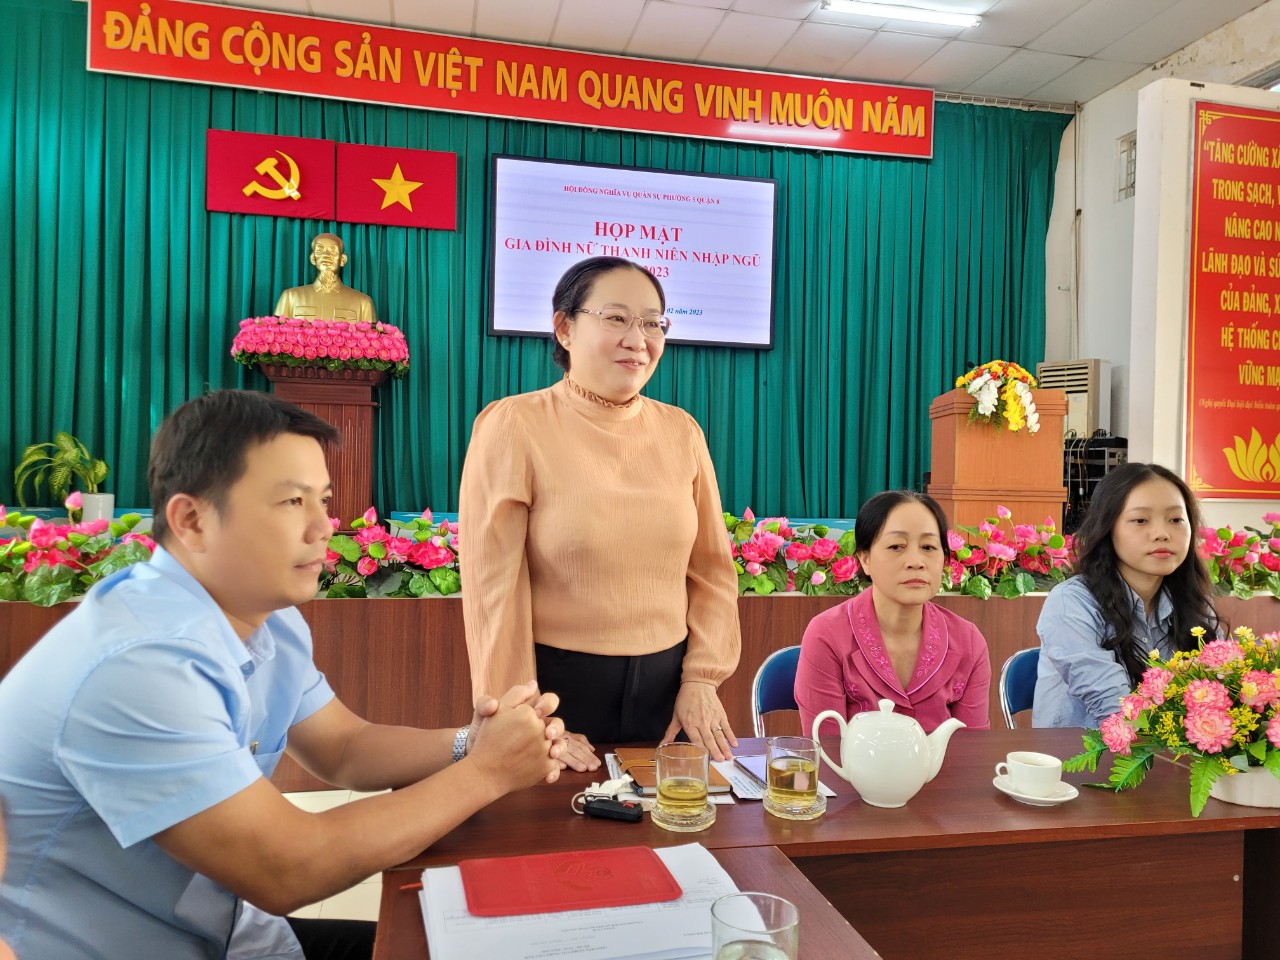 Bà Trần Thị Thu Trang - Bí thư Đảng ủy phường 5, quận 8 thông tin về công tác tuyển quân năm 2023 tại địa phương và gởi lời nhắn nhủ đến Thảo và gia đình